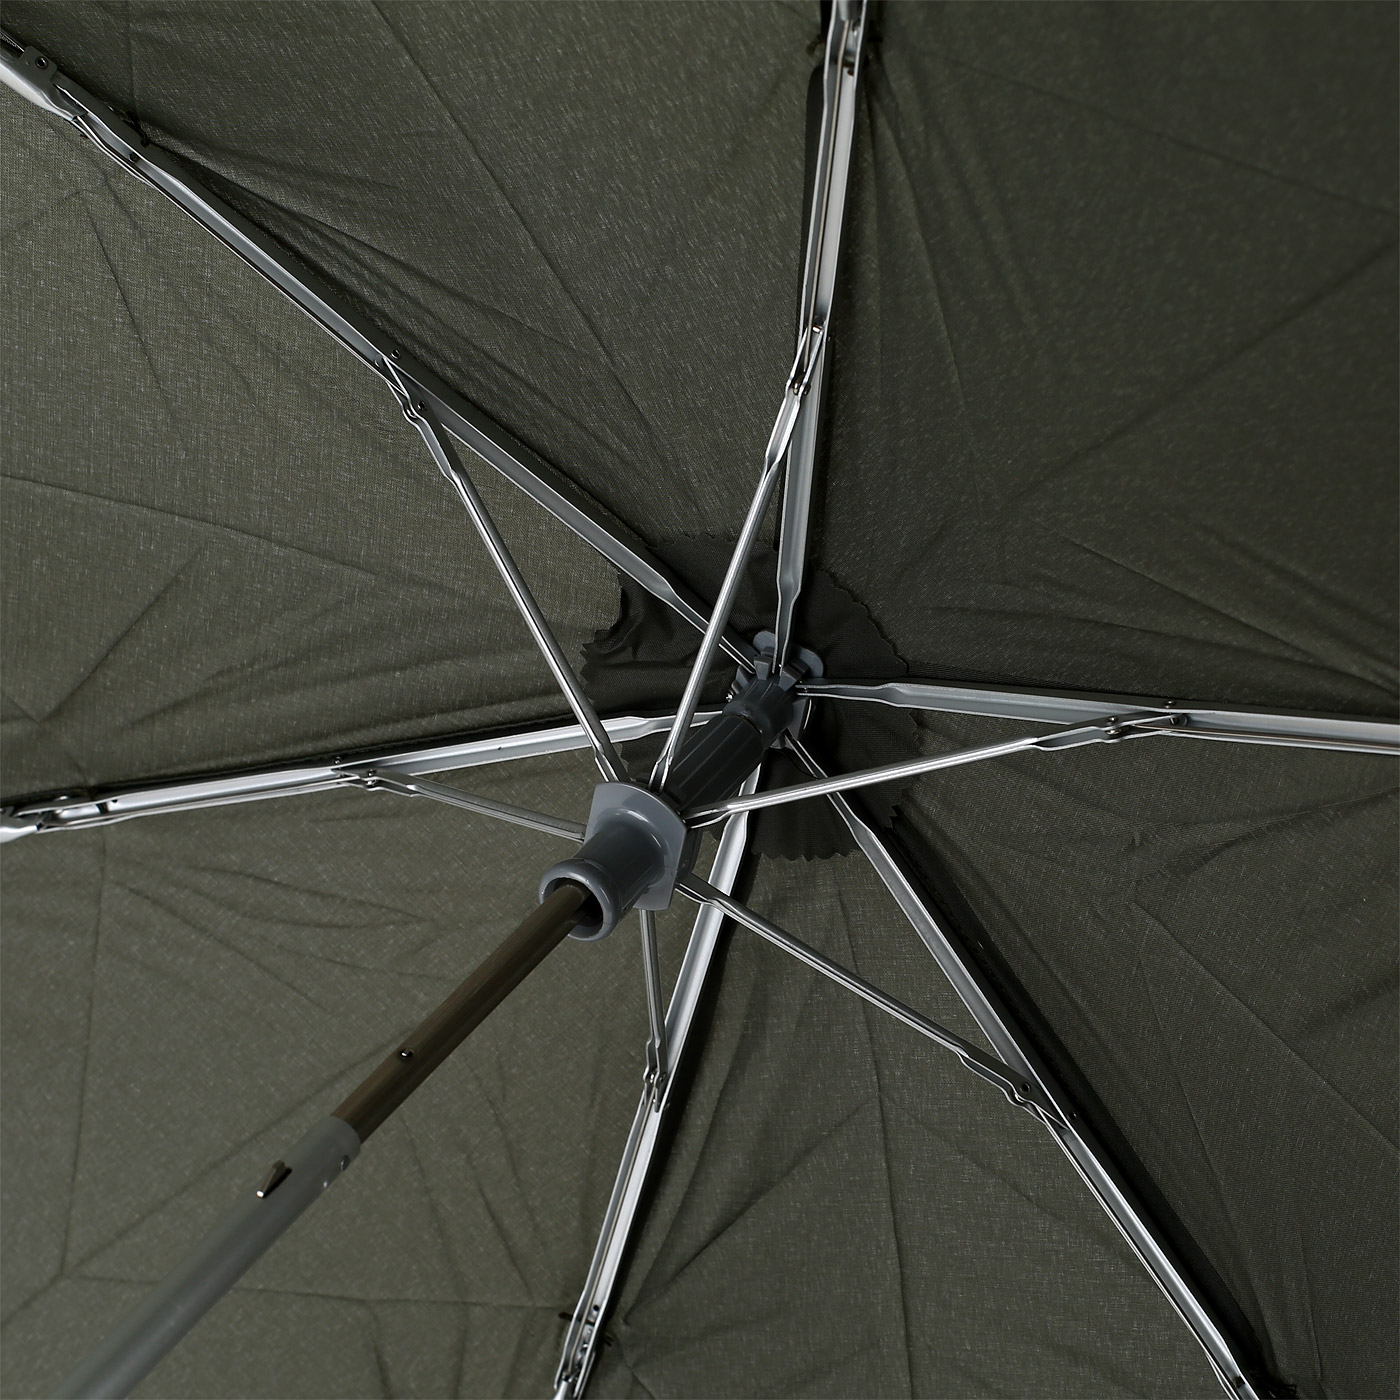 Зонт с системой «антиветер» Samsonite Alu Drop